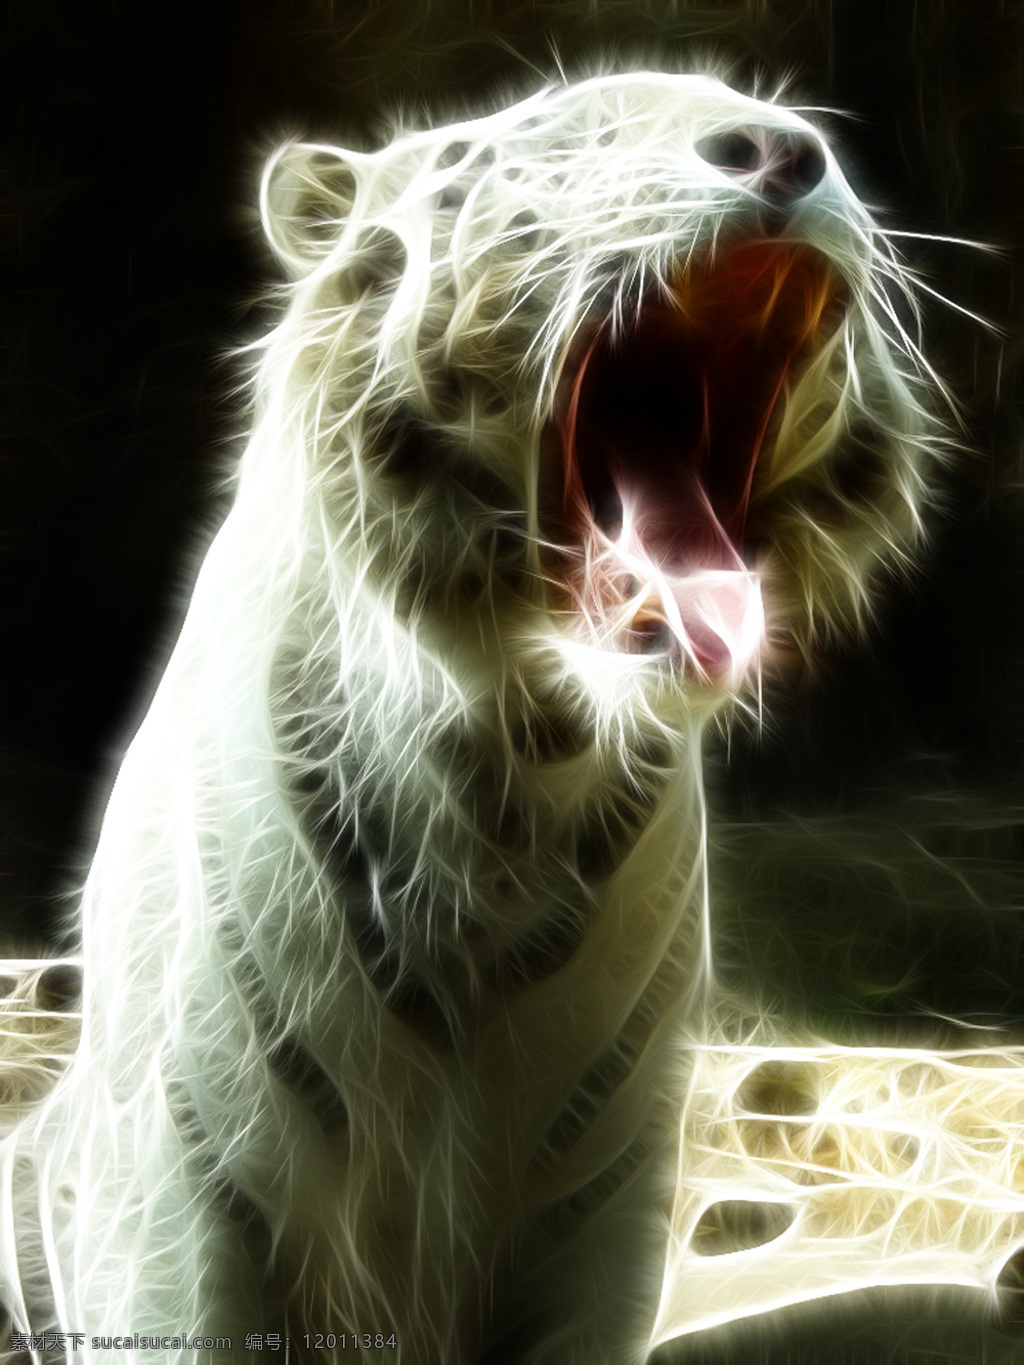 白虎 咆哮 唯美 光线 图 老虎 虎头 光线图 凶狠 凶残 霸气 侧脸 正面 野生动物 生物世界